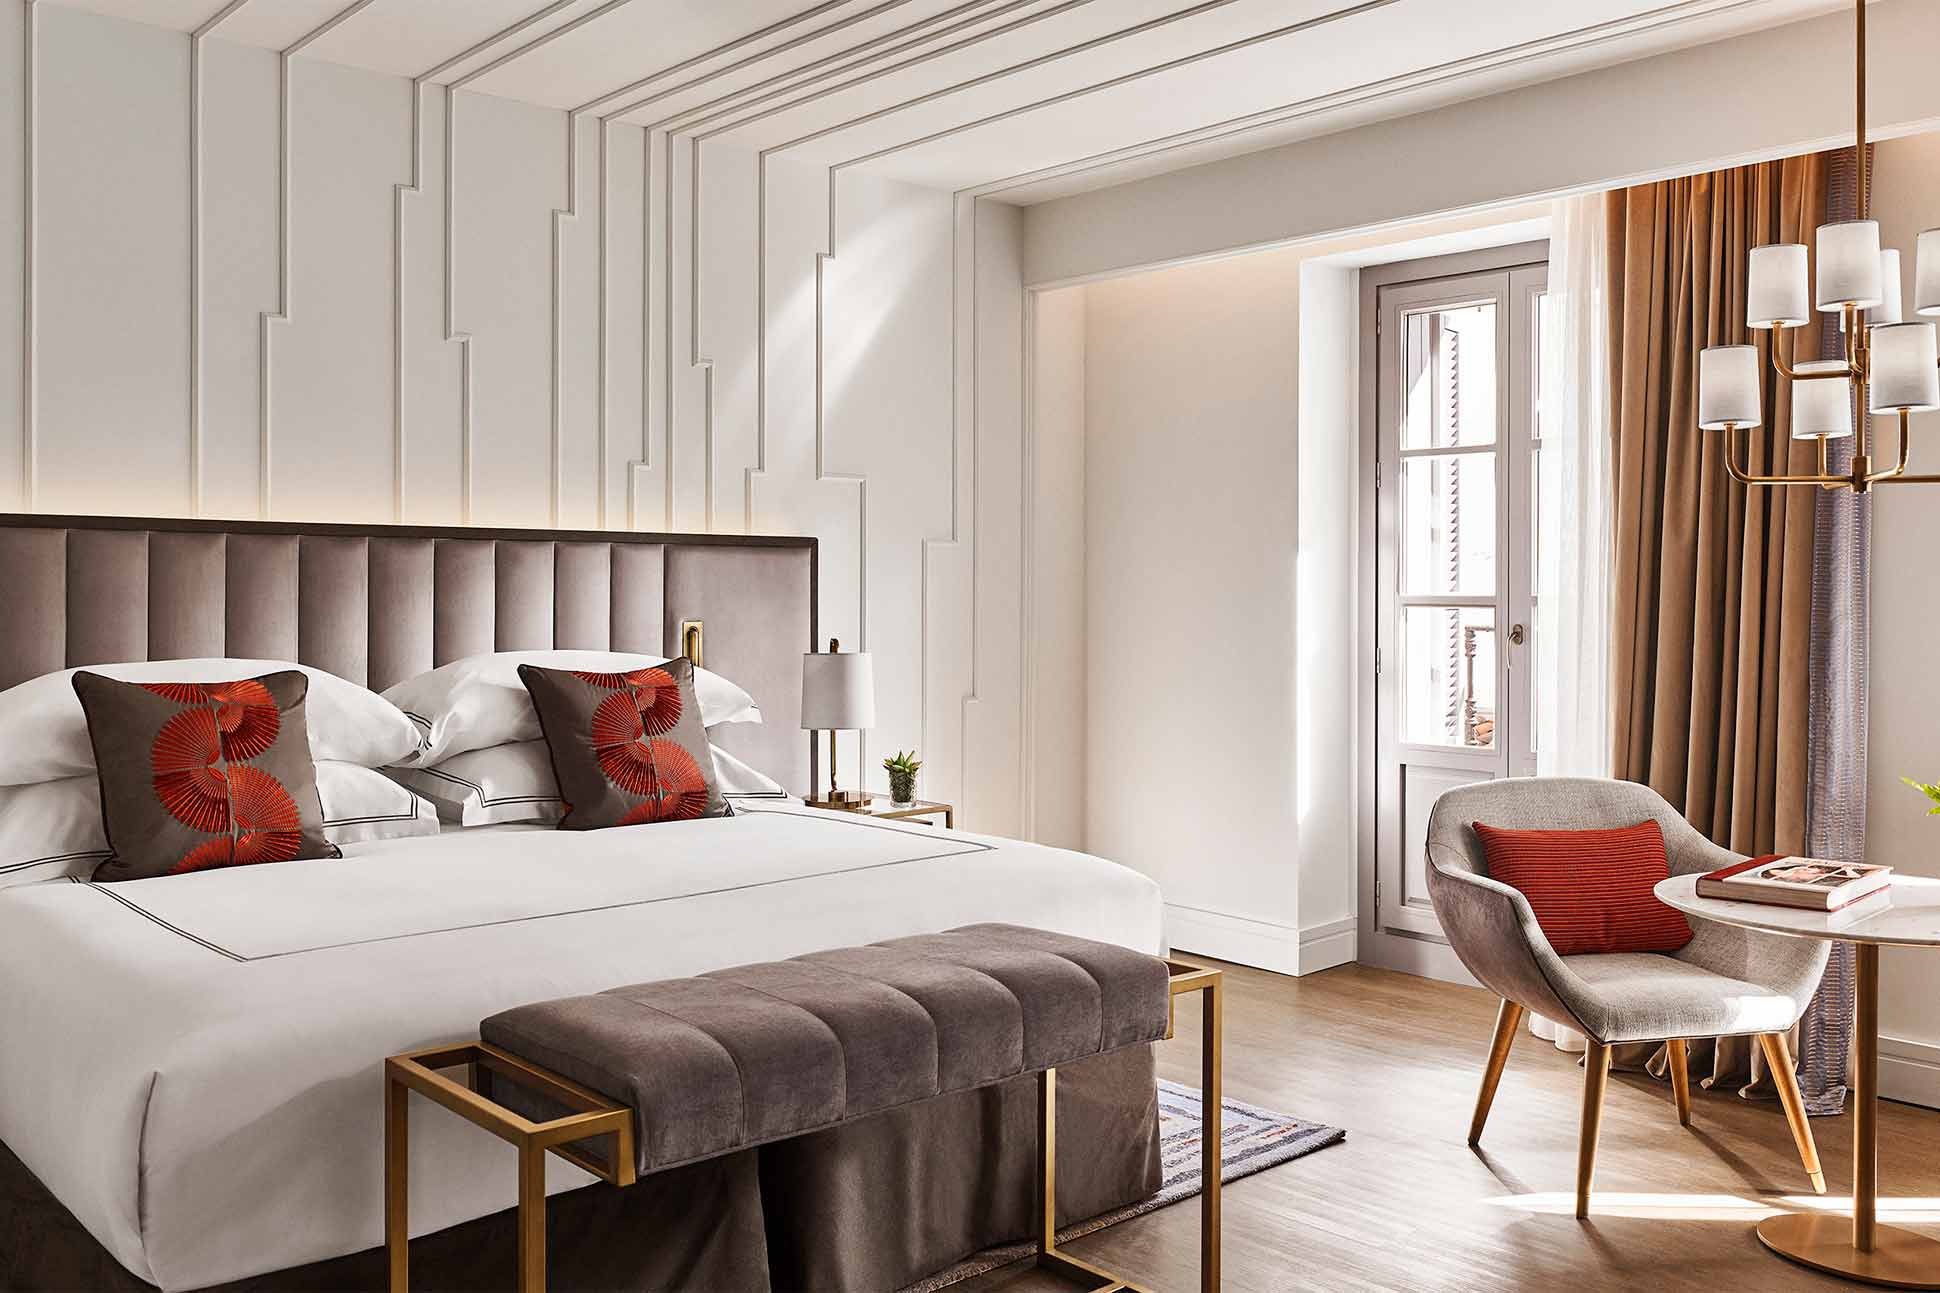 Bedroom at Gran Hotel Inglés, Madrid, Spain